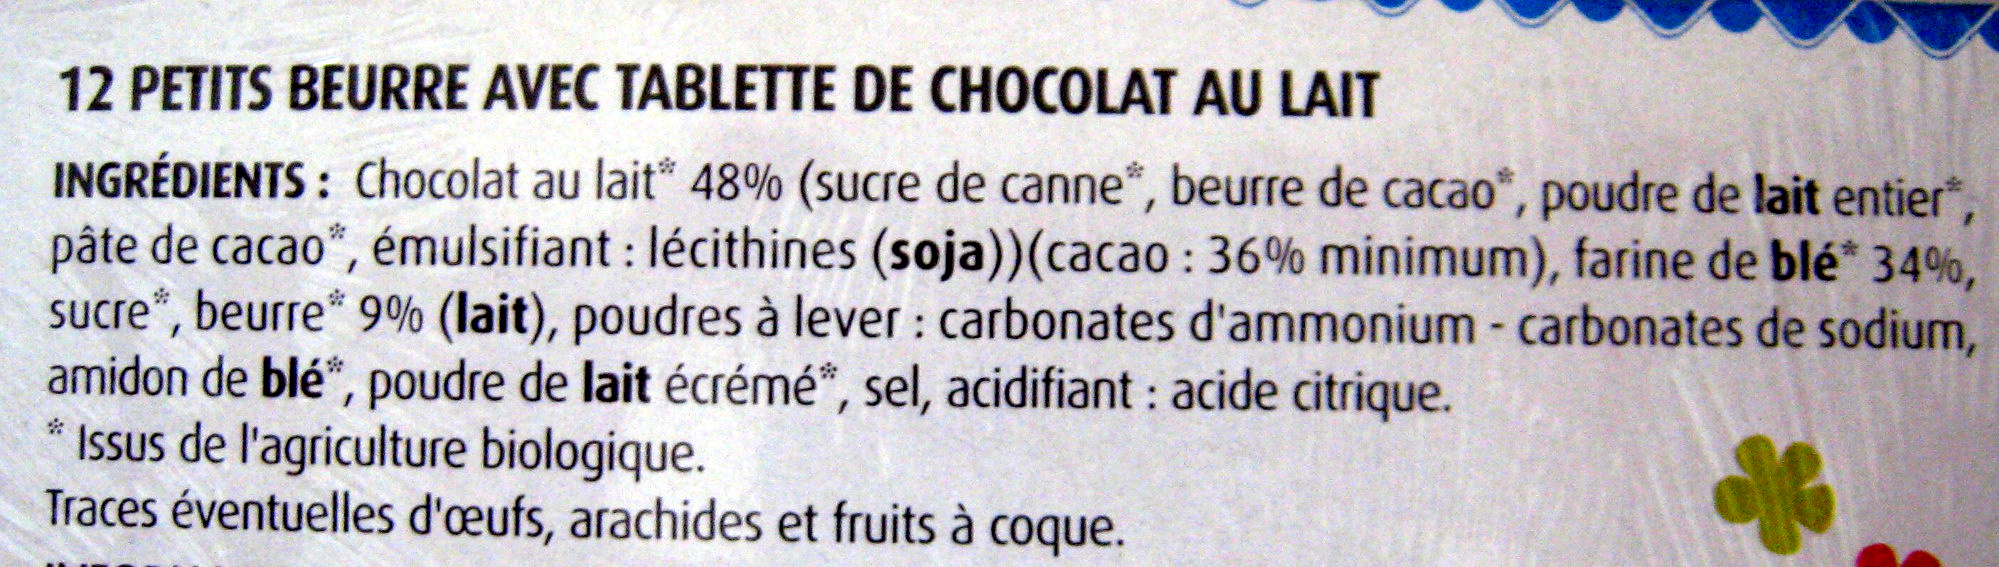 Petit Beurre avec tablette de chocolat au lait BIO (lot de 2) - Ingredients - fr